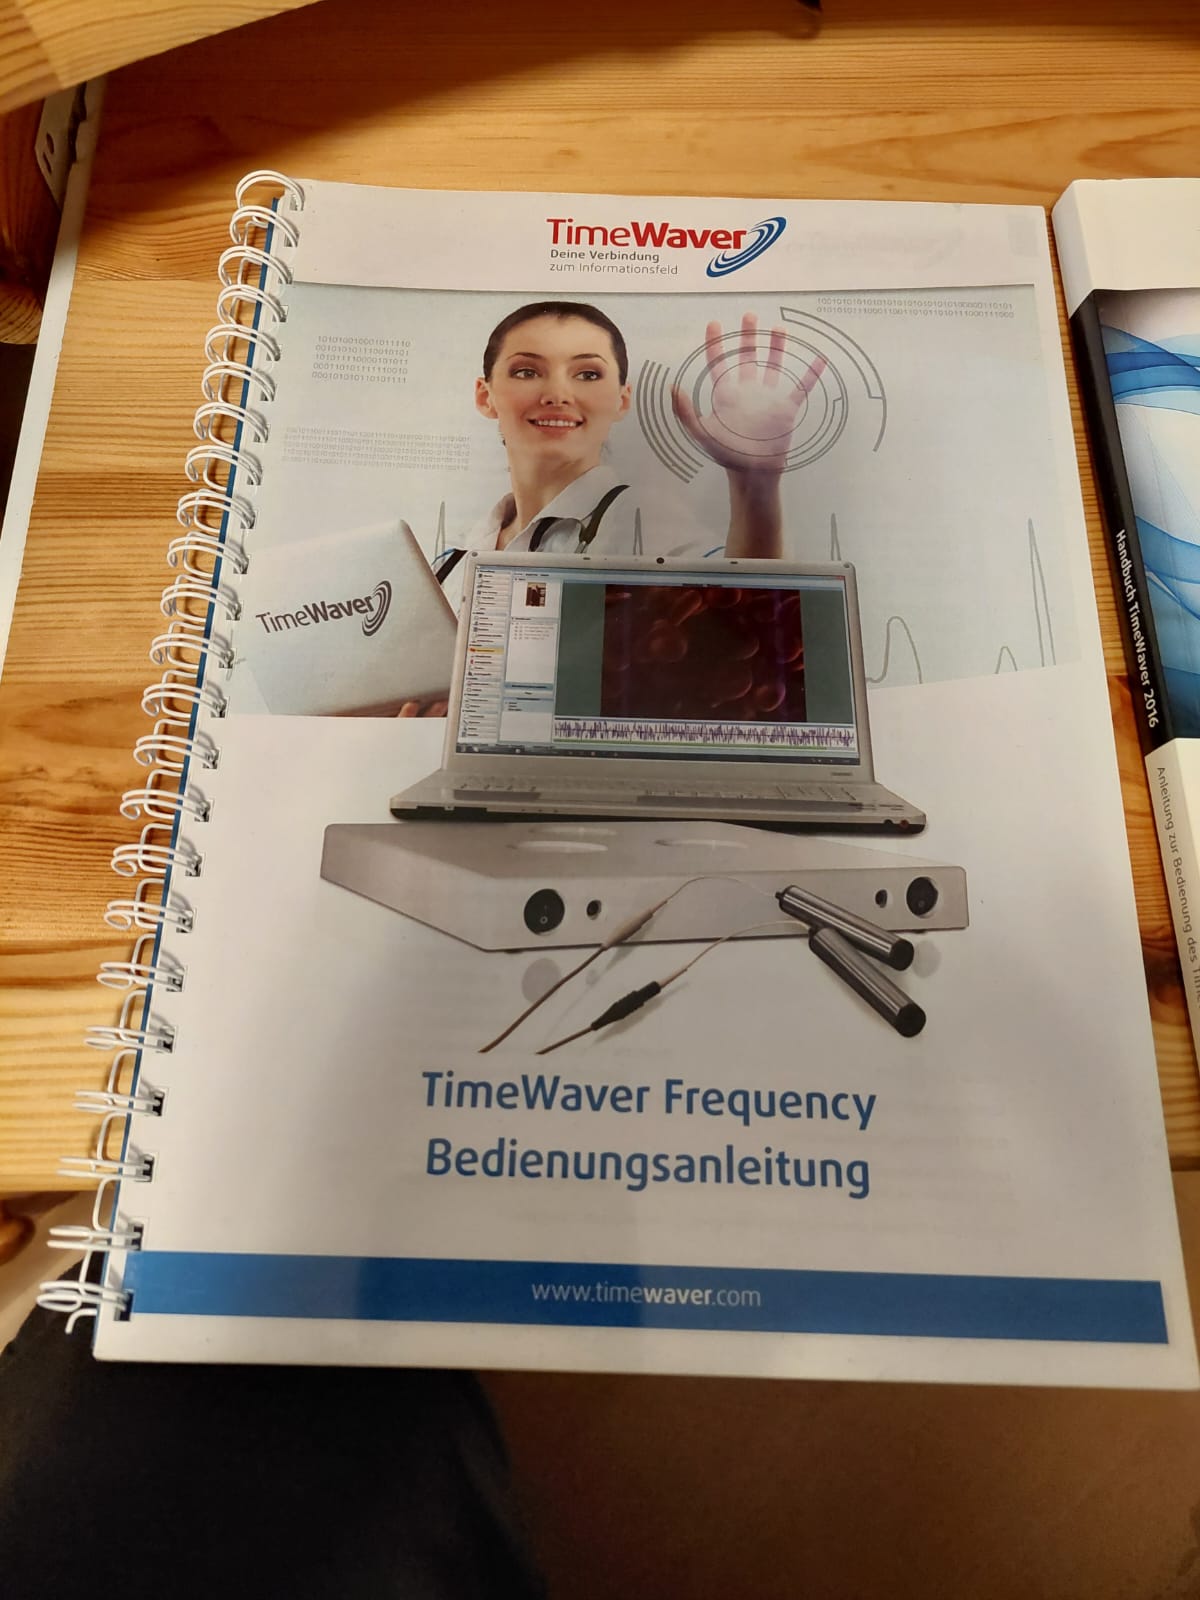 TimeWaver Frequency mit Laptop mit neuer Überprüfung